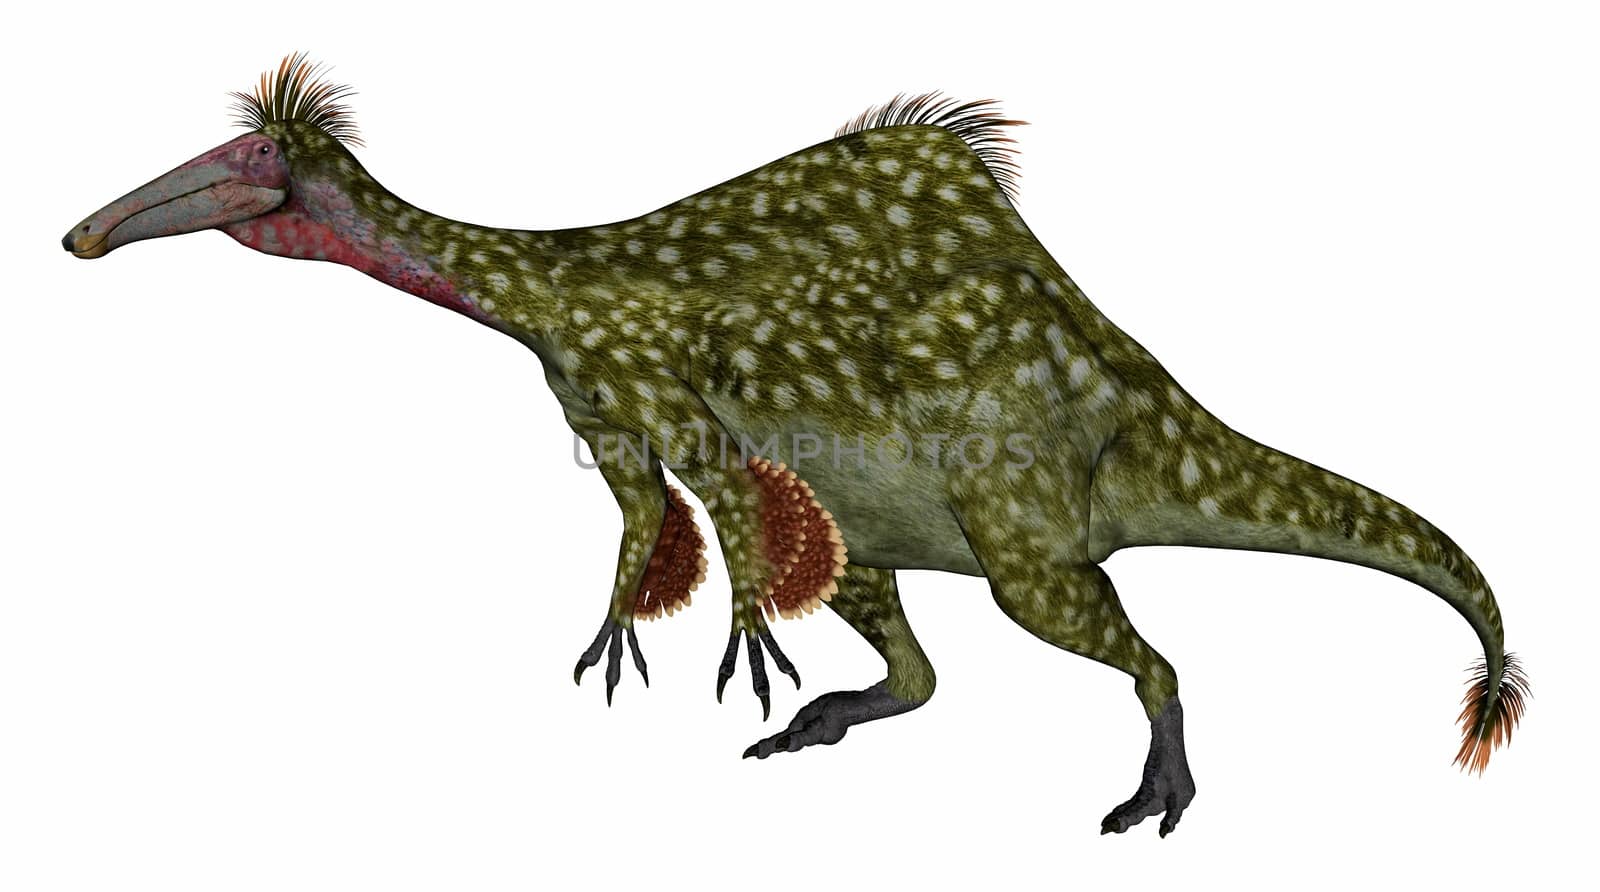 Deinocheirus dinosaur - 3D render by Elenaphotos21